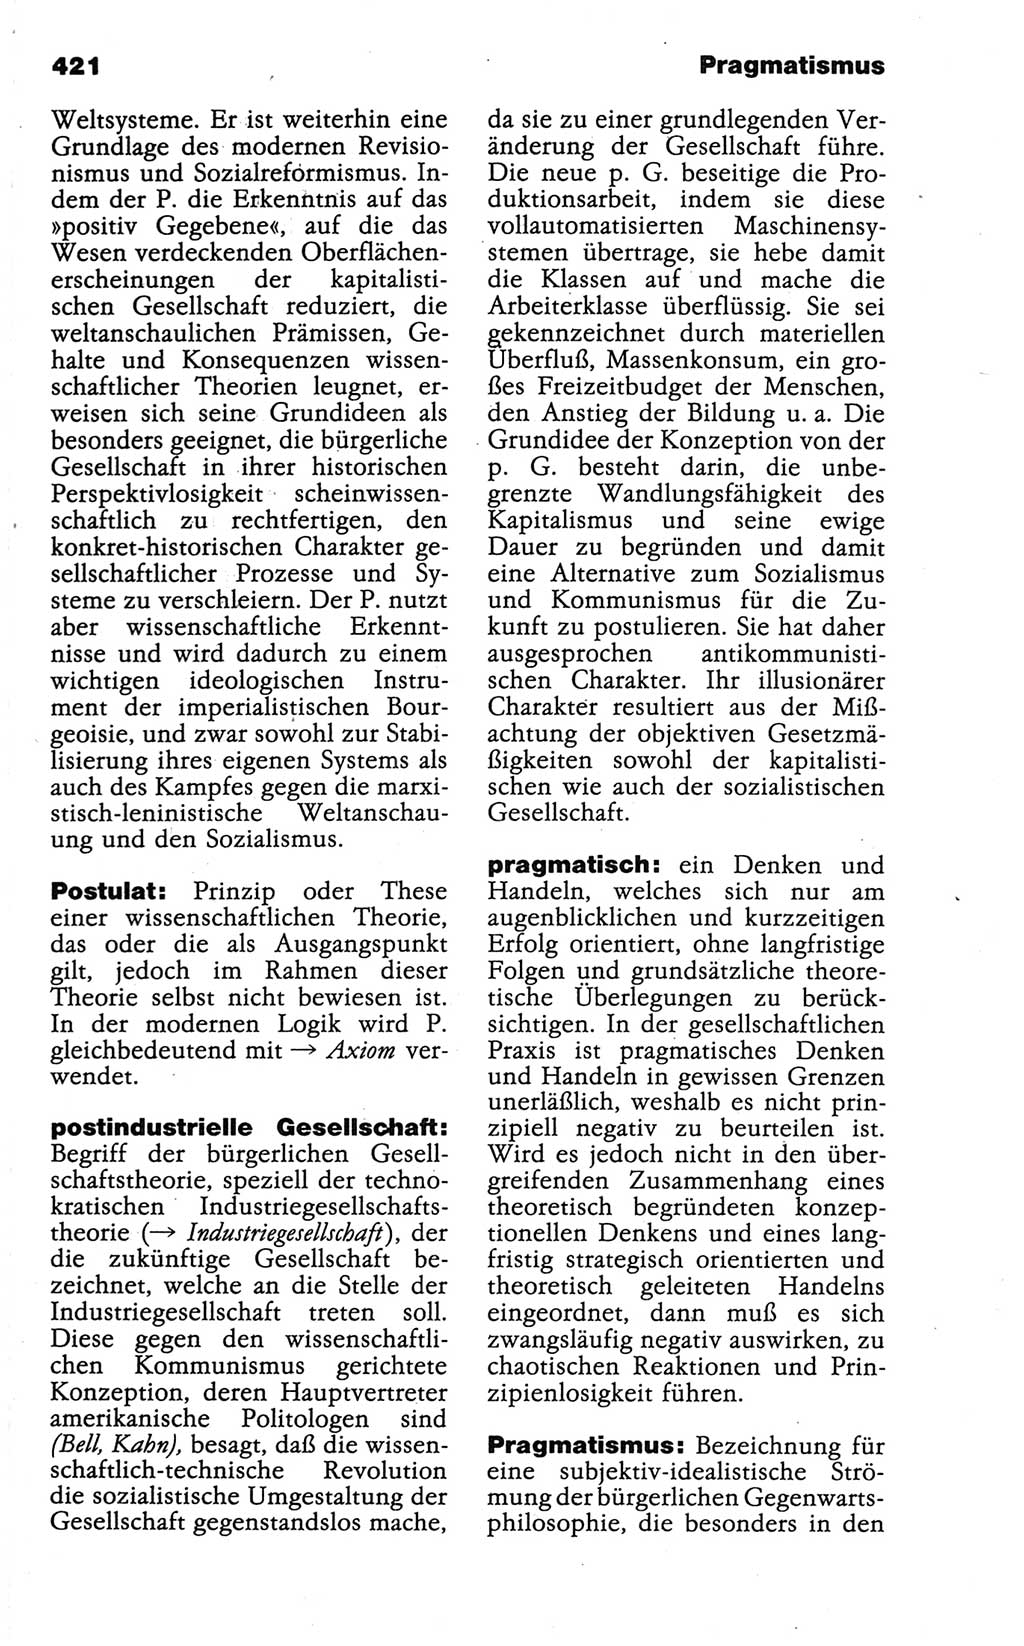 Wörterbuch der marxistisch-leninistischen Philosophie [Deutsche Demokratische Republik (DDR)] 1986, Seite 421 (Wb. ML Phil. DDR 1986, S. 421)